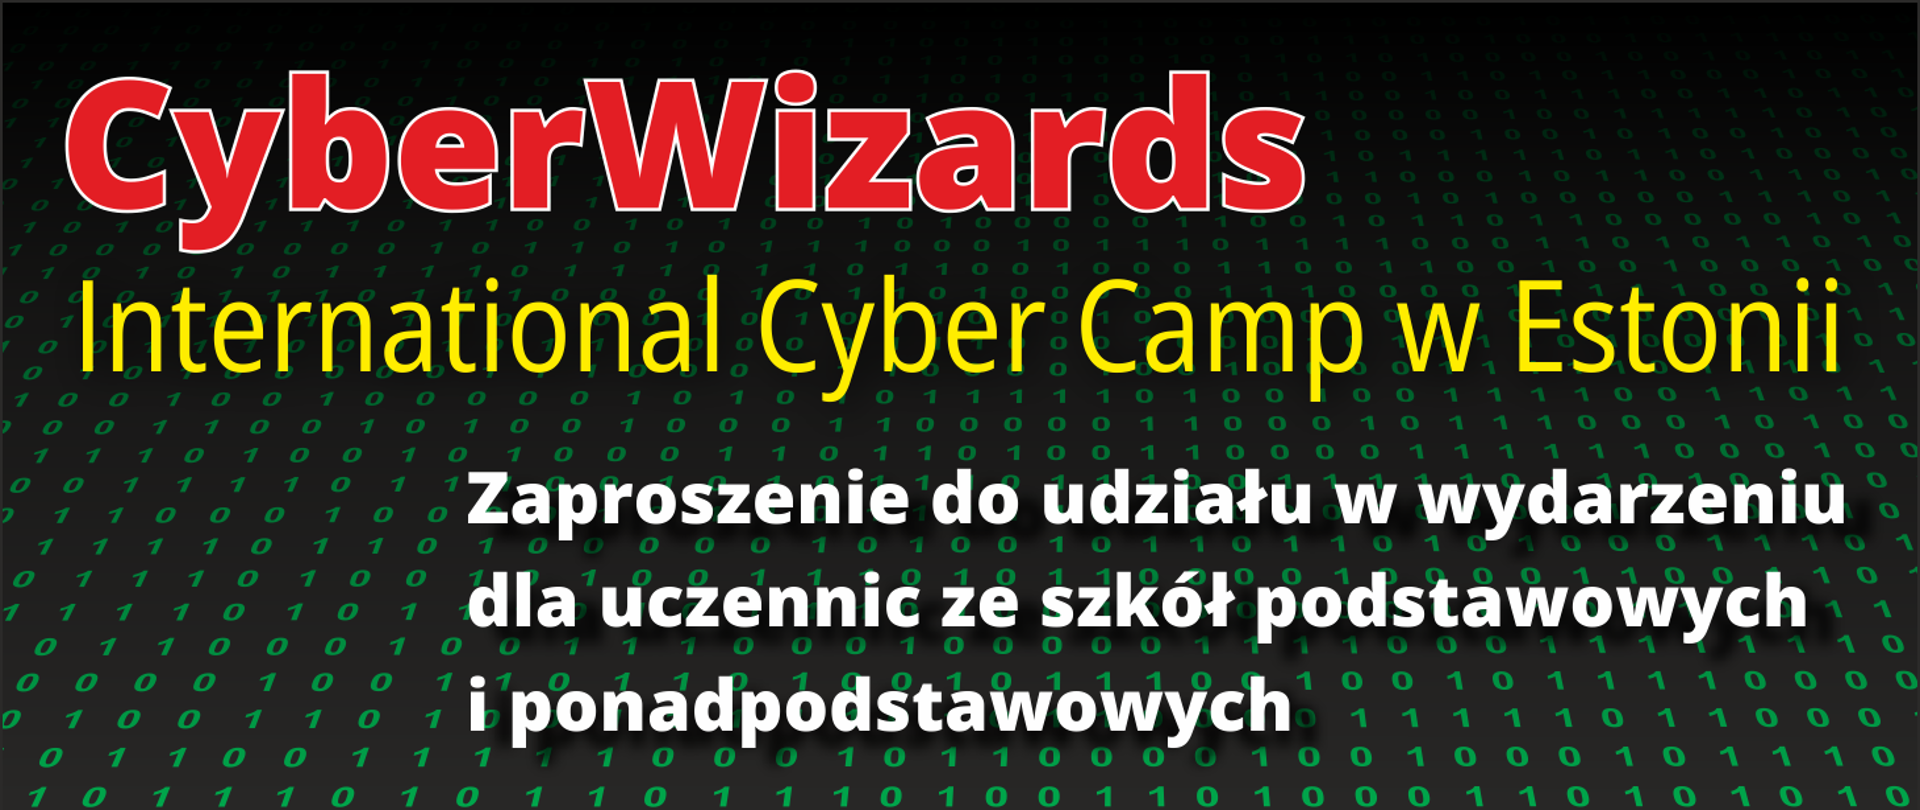 Grafika z tekstem „CyberWizards; International Cyber Camp w Estonii; Zaproszenie do udziału w wydarzeniu
dla uczennic ze szkół podstawowych i ponadpodstawowych”.